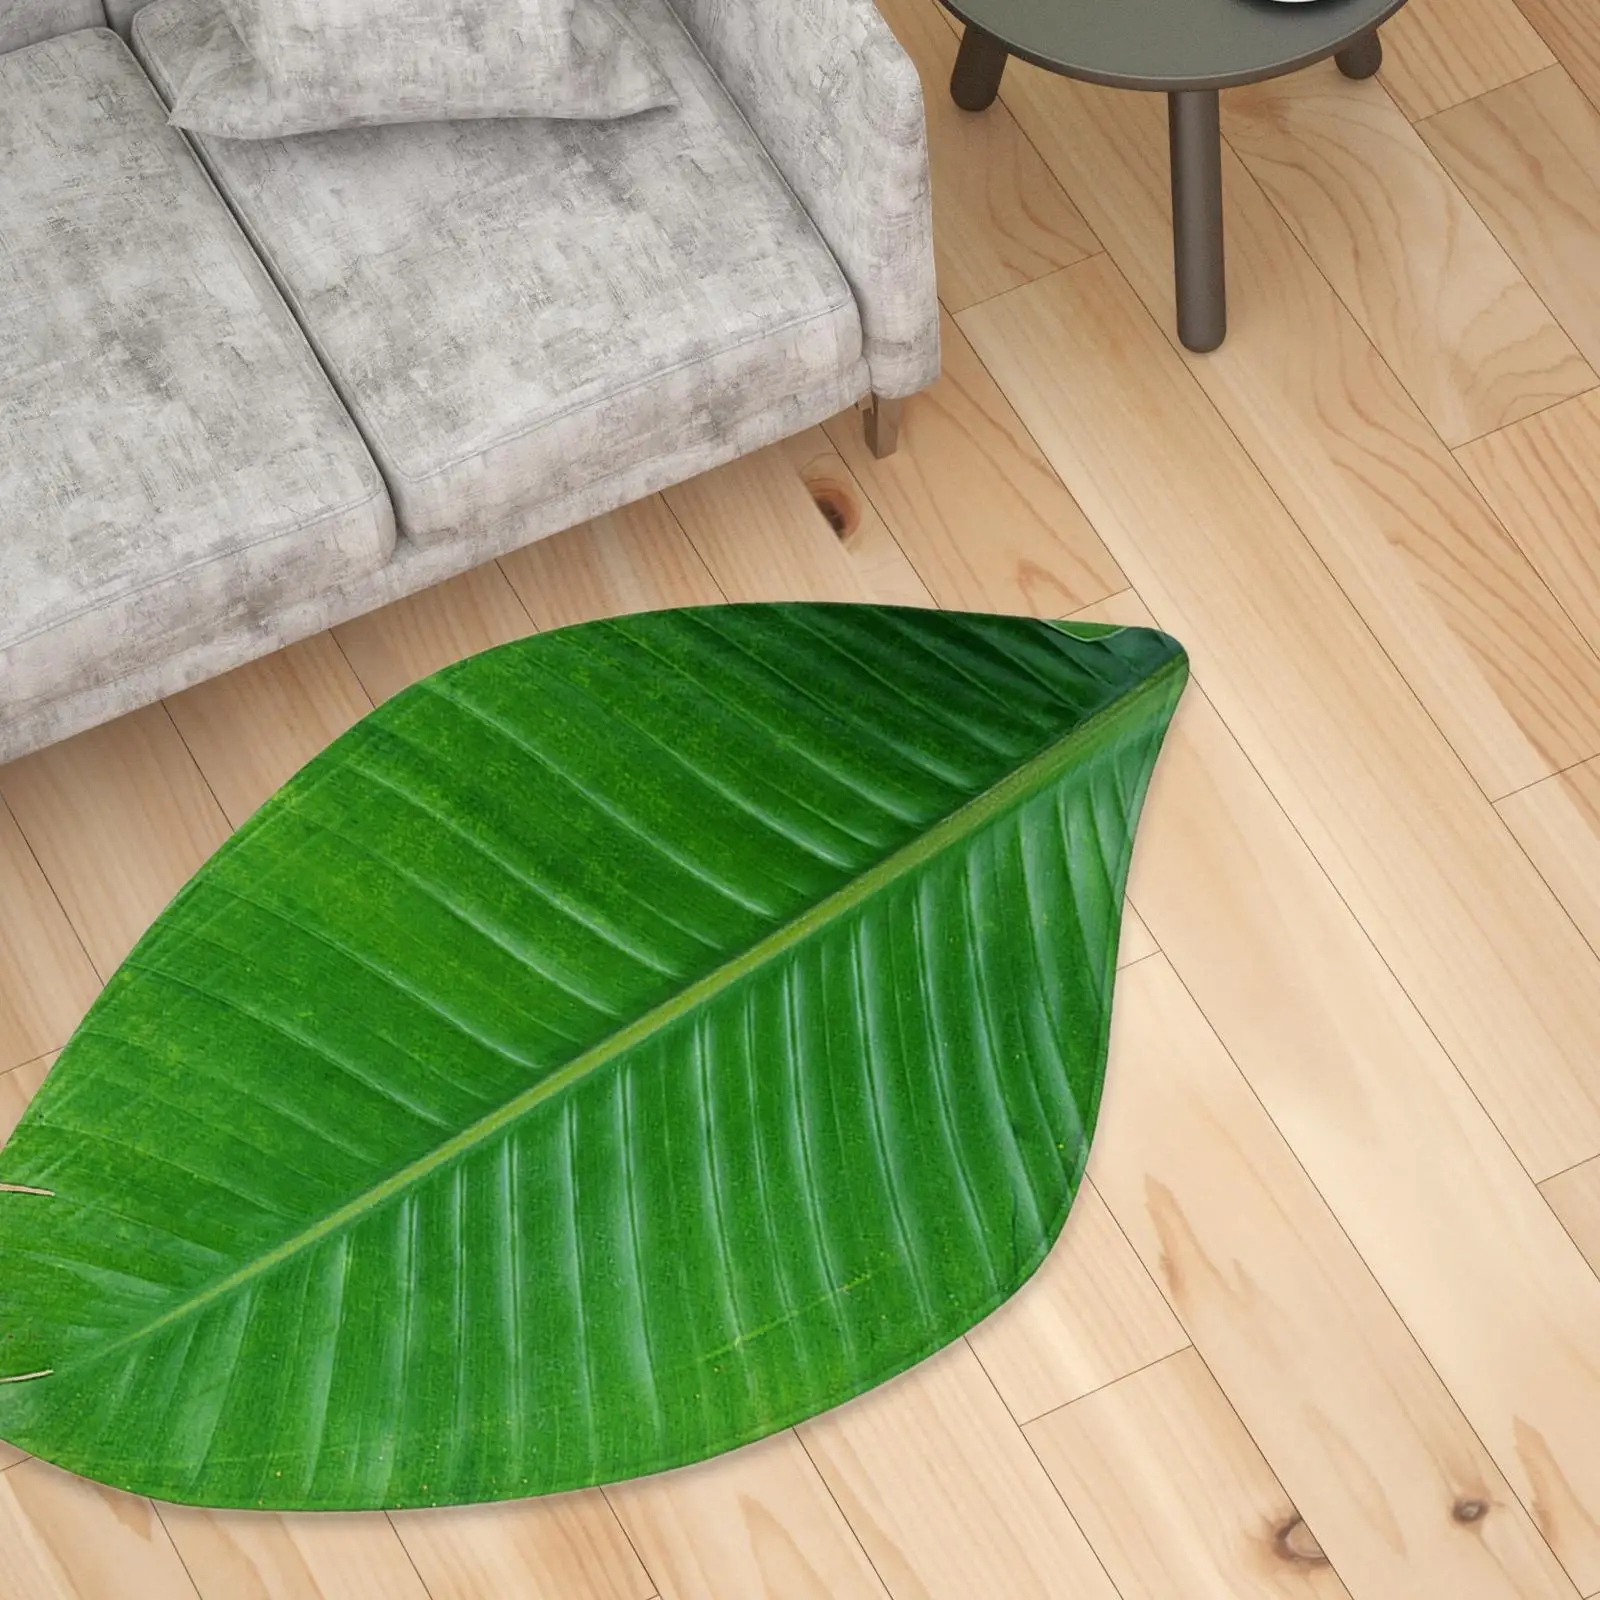 Green Leaves Floor Mat Entrance Door Mat Non Slip Leaves Rug Toilet Mat Carpet Soft Area Rugs for Bedroom Living Room Home Decor